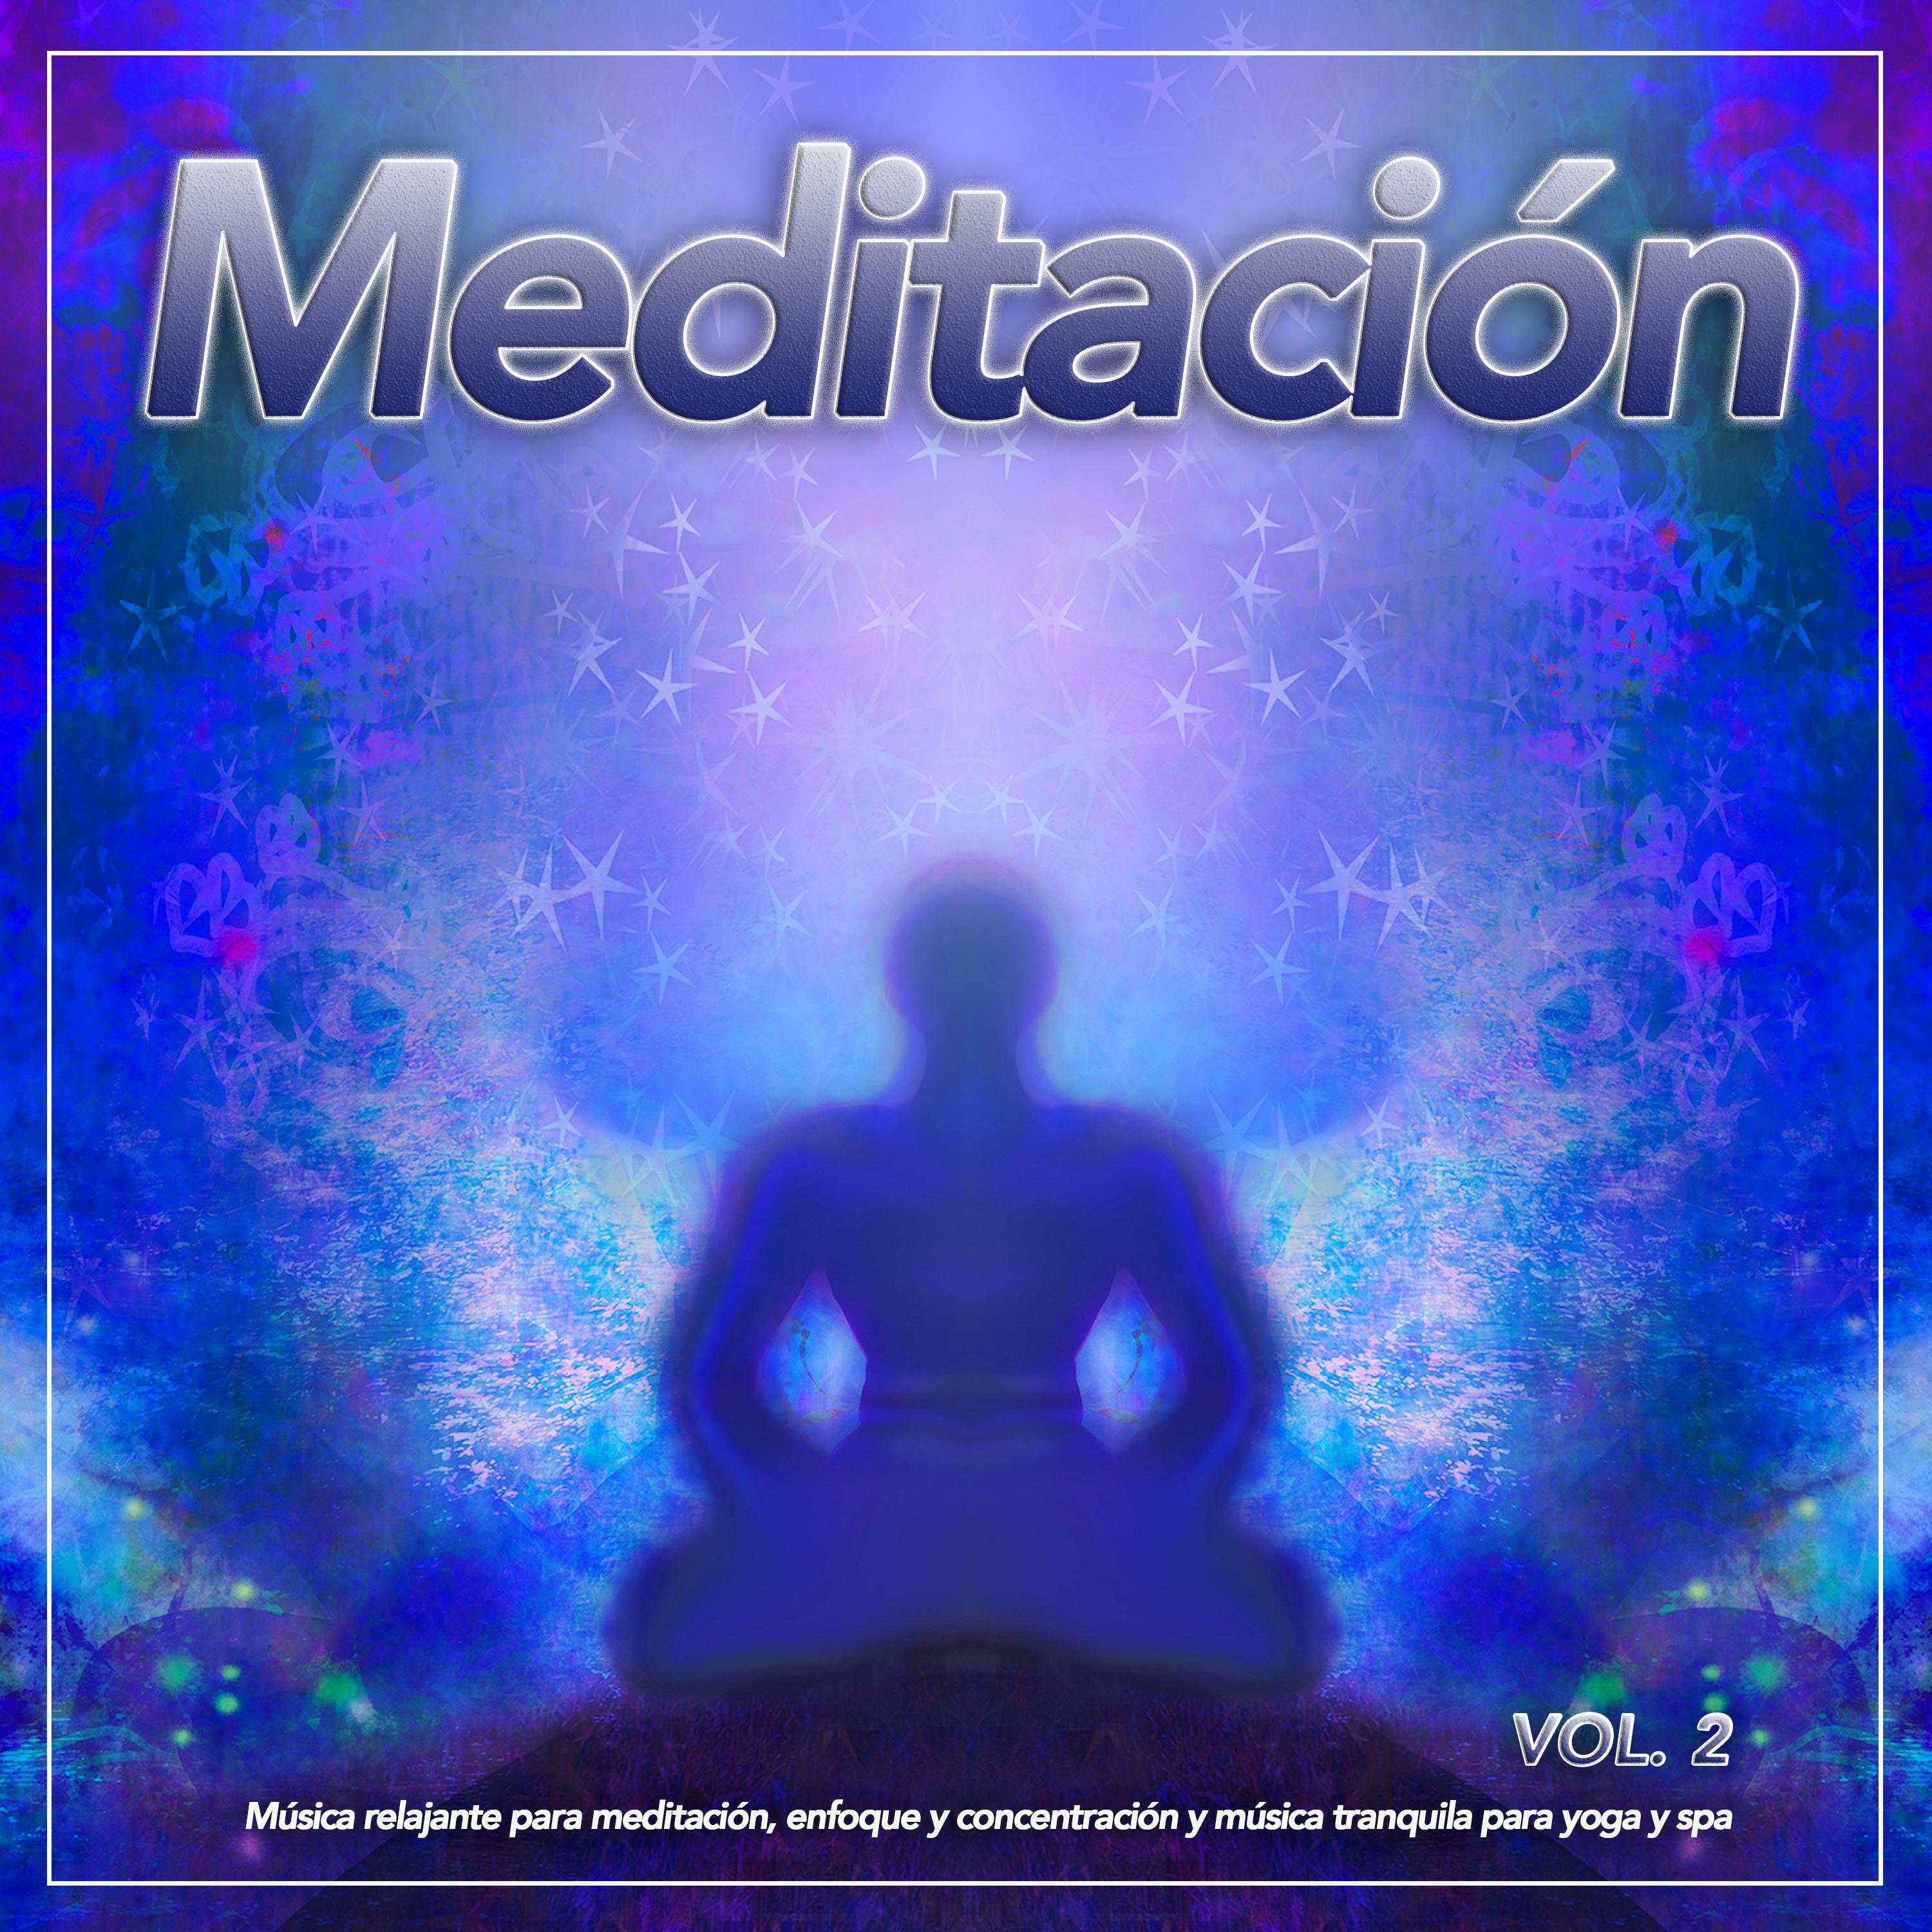 Meditación: Música relajante para meditación, enfoque y concentración y música tranquila para yoga y spa, Vol. 2